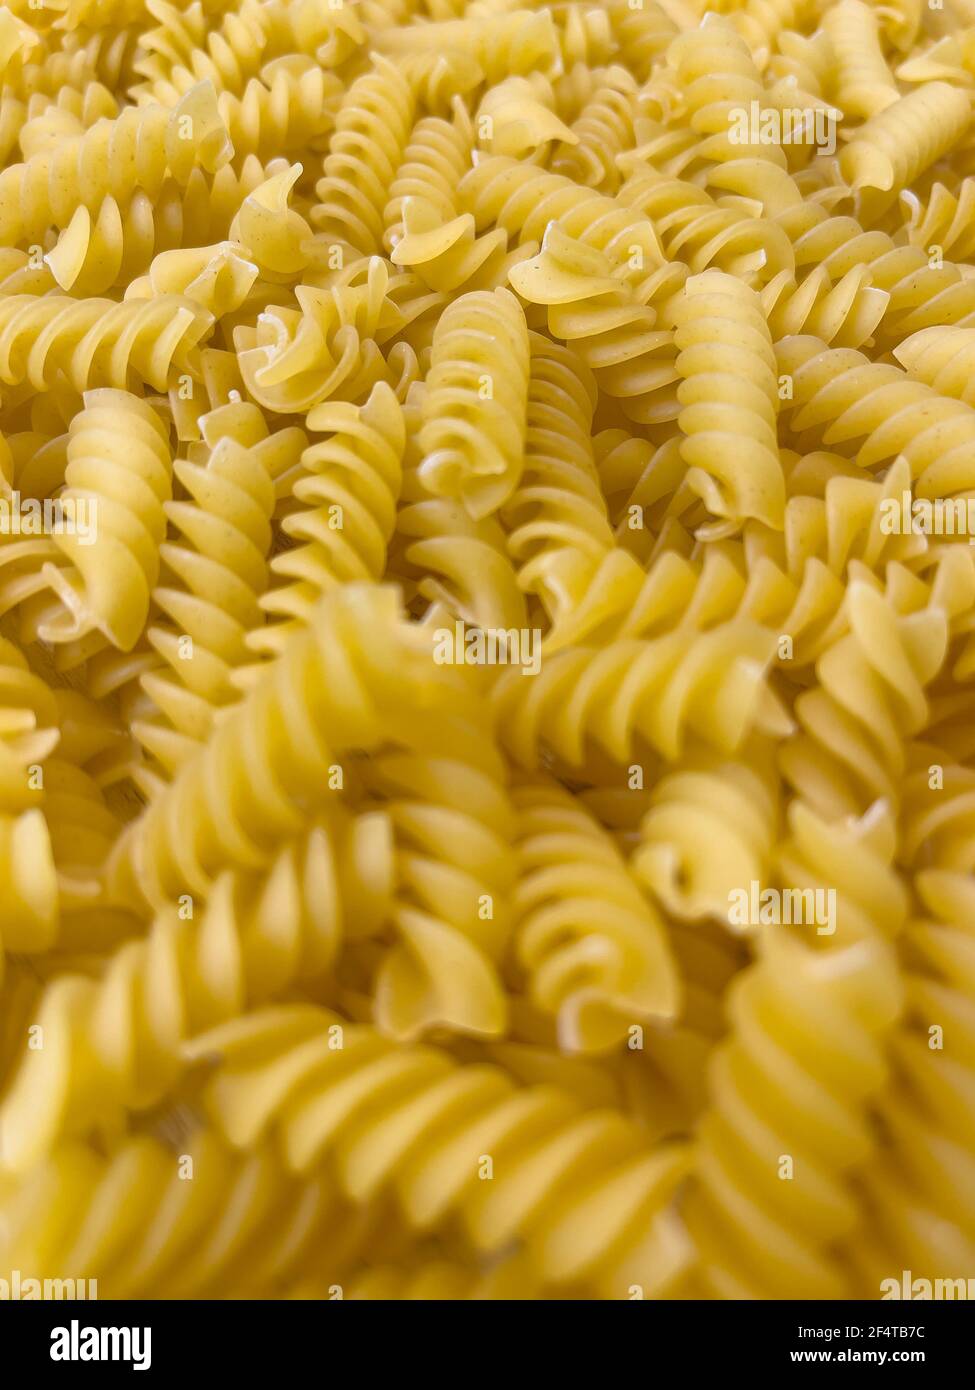 Fond ou texture de la nourriture pâtes italiennes sèches crues en forme de spirale. Gros plan, macro, vue de dessus. Macaroni non cuit Banque D'Images